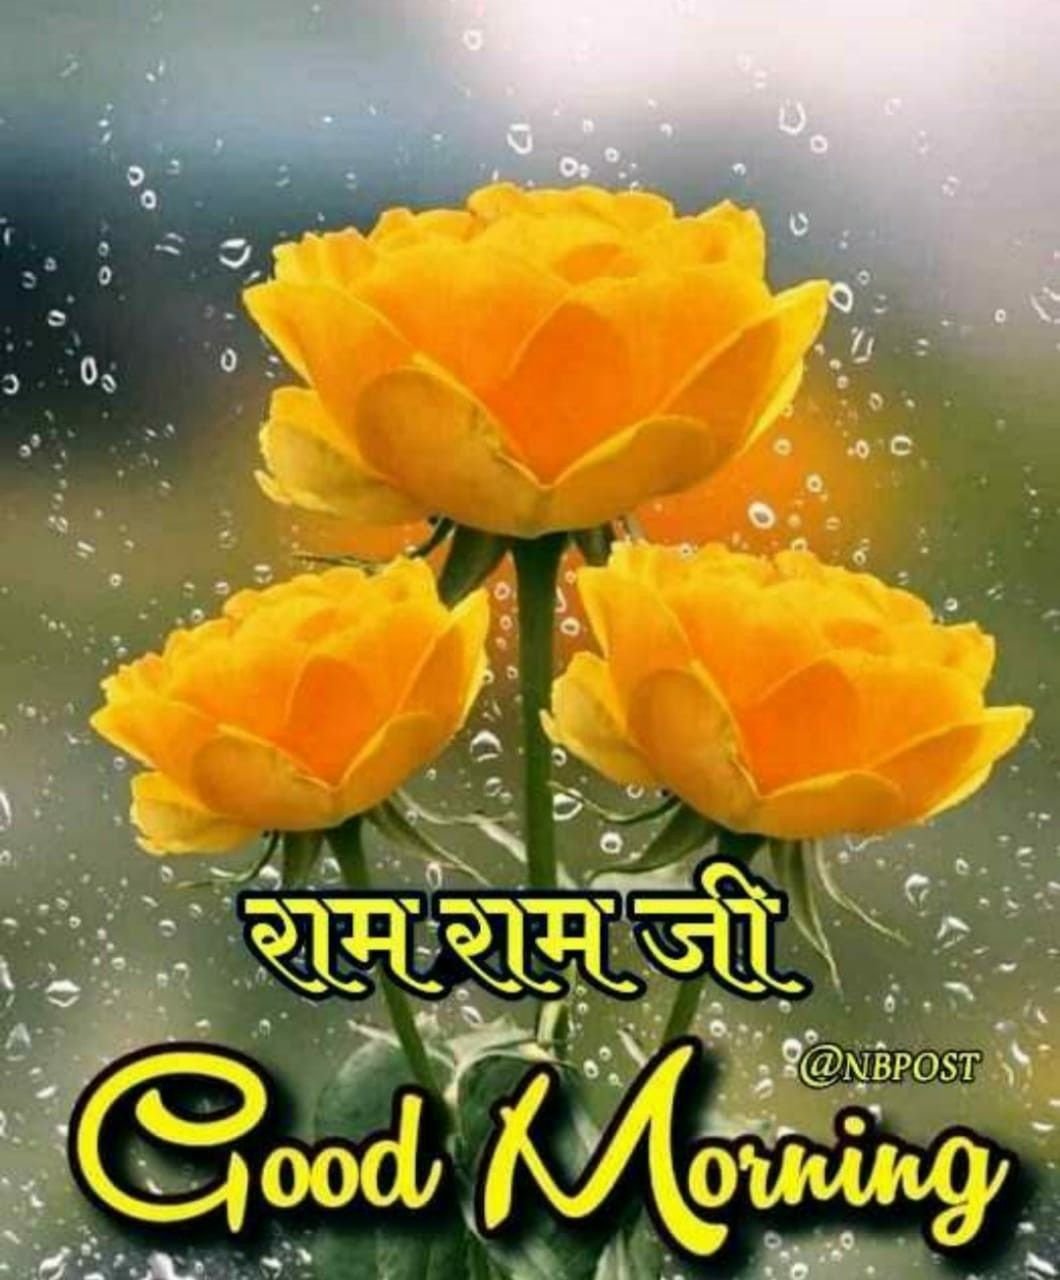 Jai Sri Ram Good Morning Flower